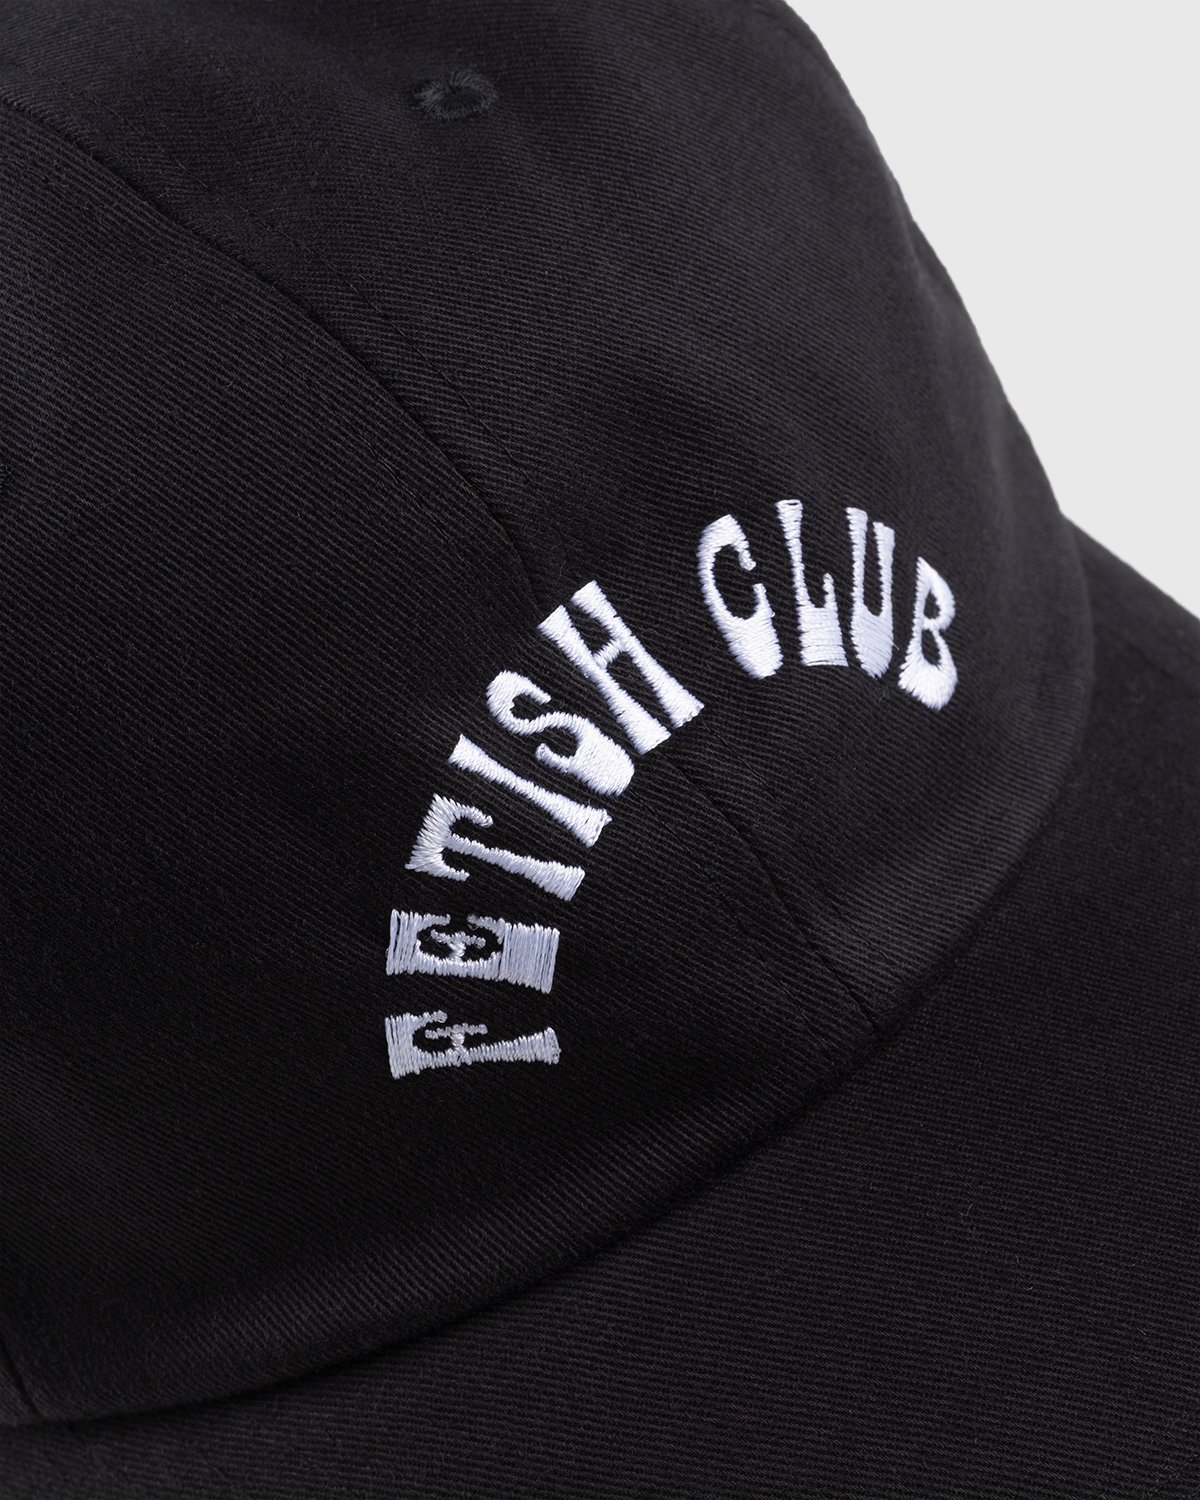 Carne Bollente - Fetish Club Cap Black - Accessories - Black - Image 6